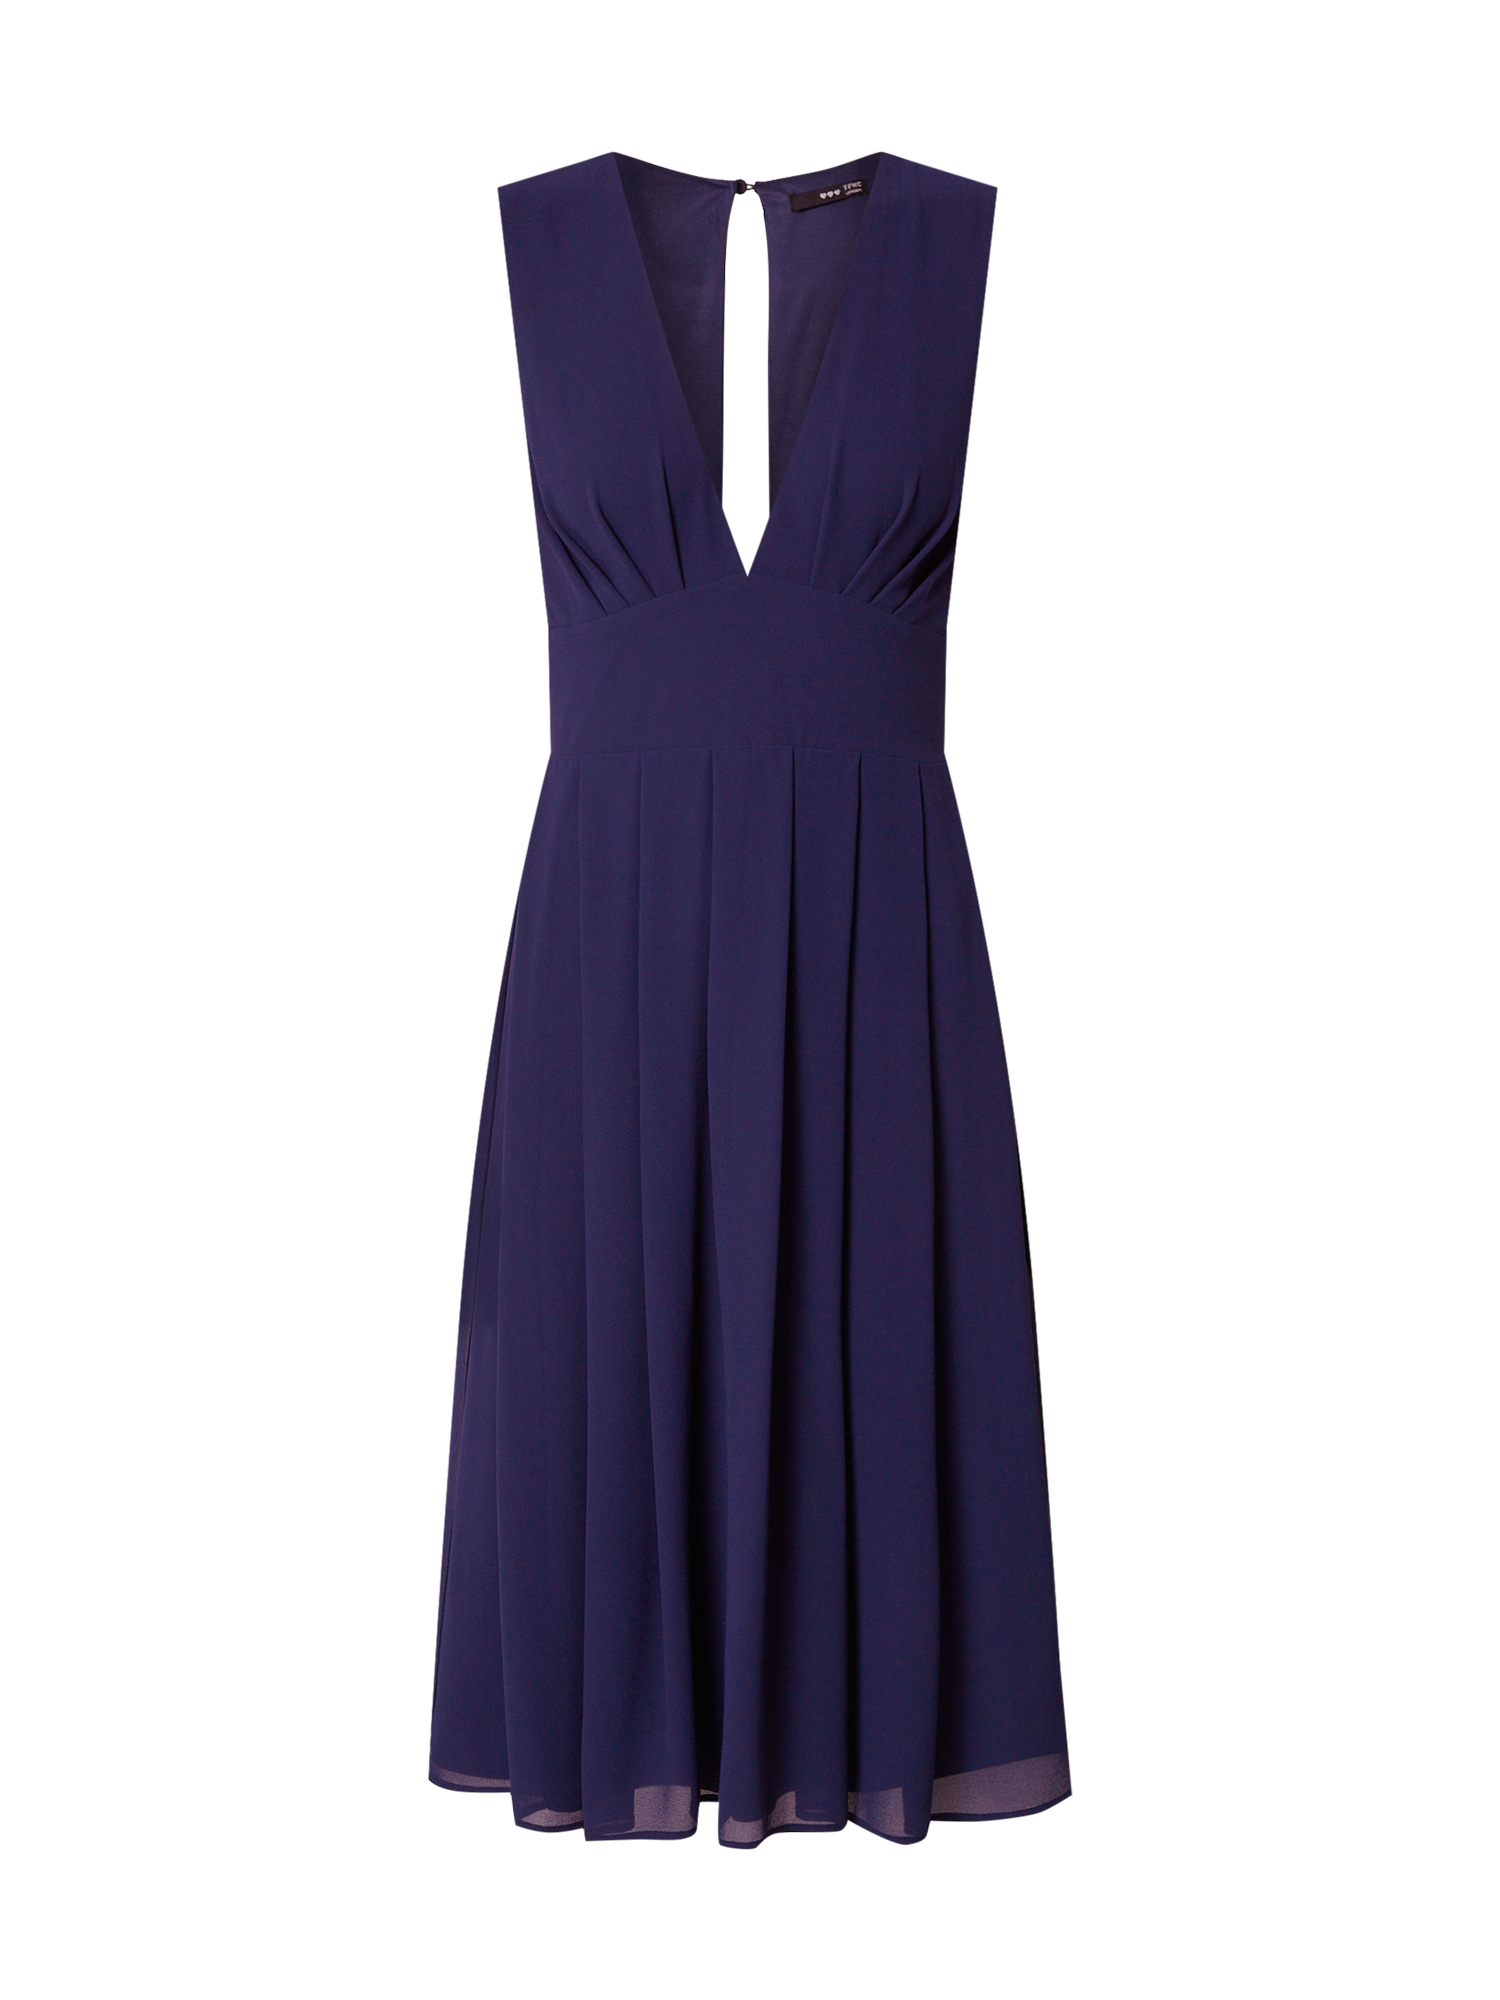 Odzież Kobiety TFNC Kleid PRESLEY w kolorze Granatowym 